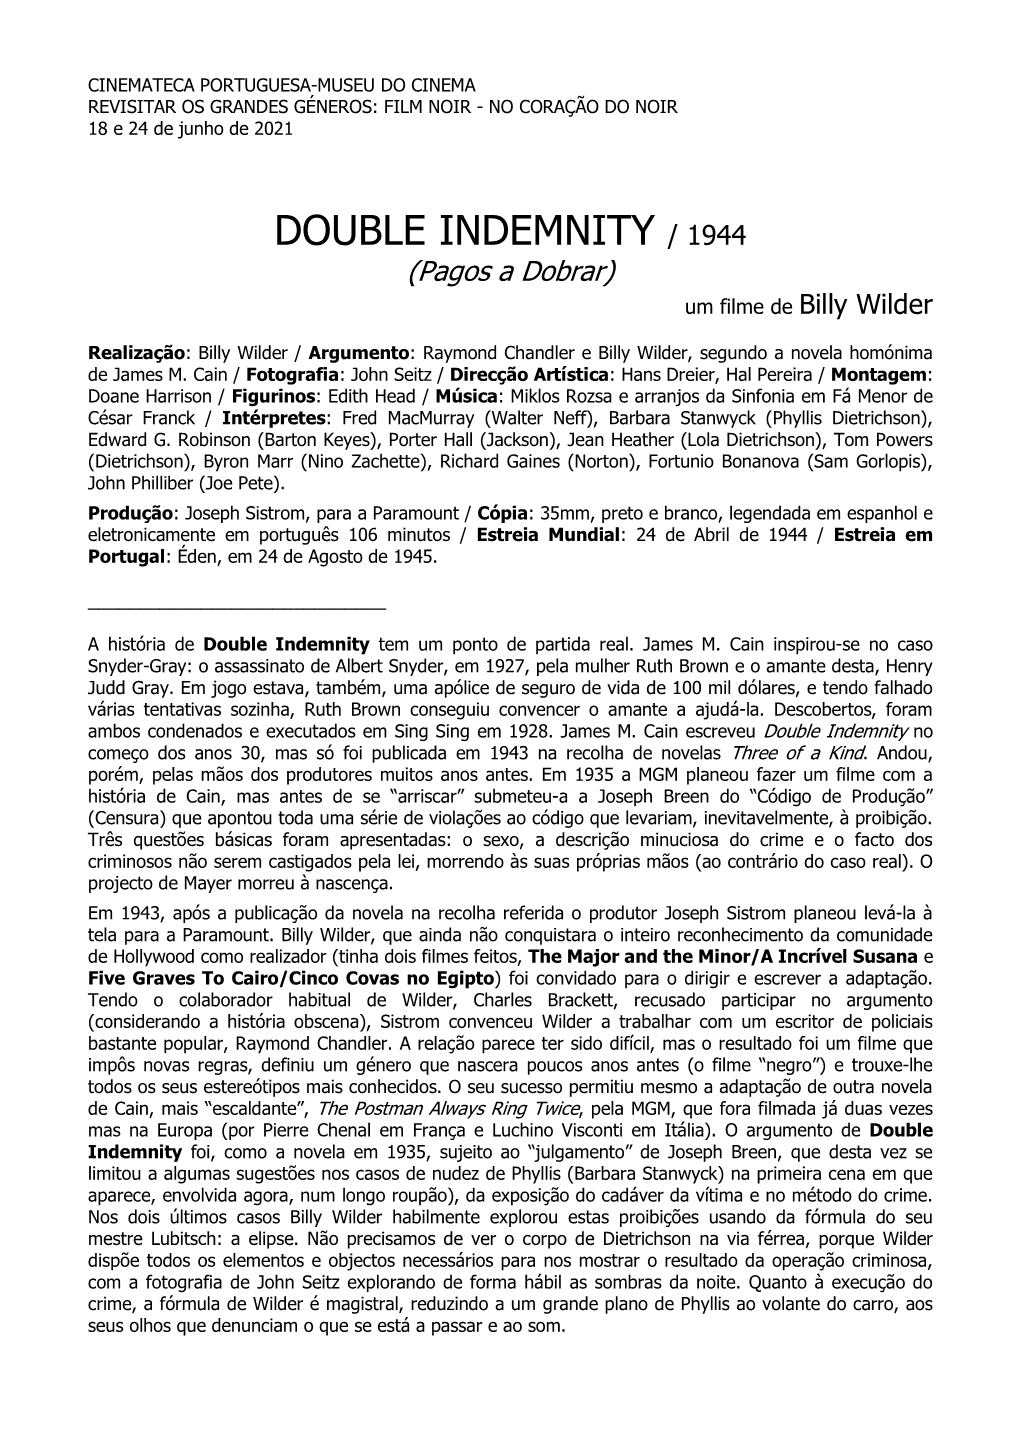 DOUBLE INDEMNITY / 1944 (Pagos a Dobrar) Um Filme De Billy Wilder